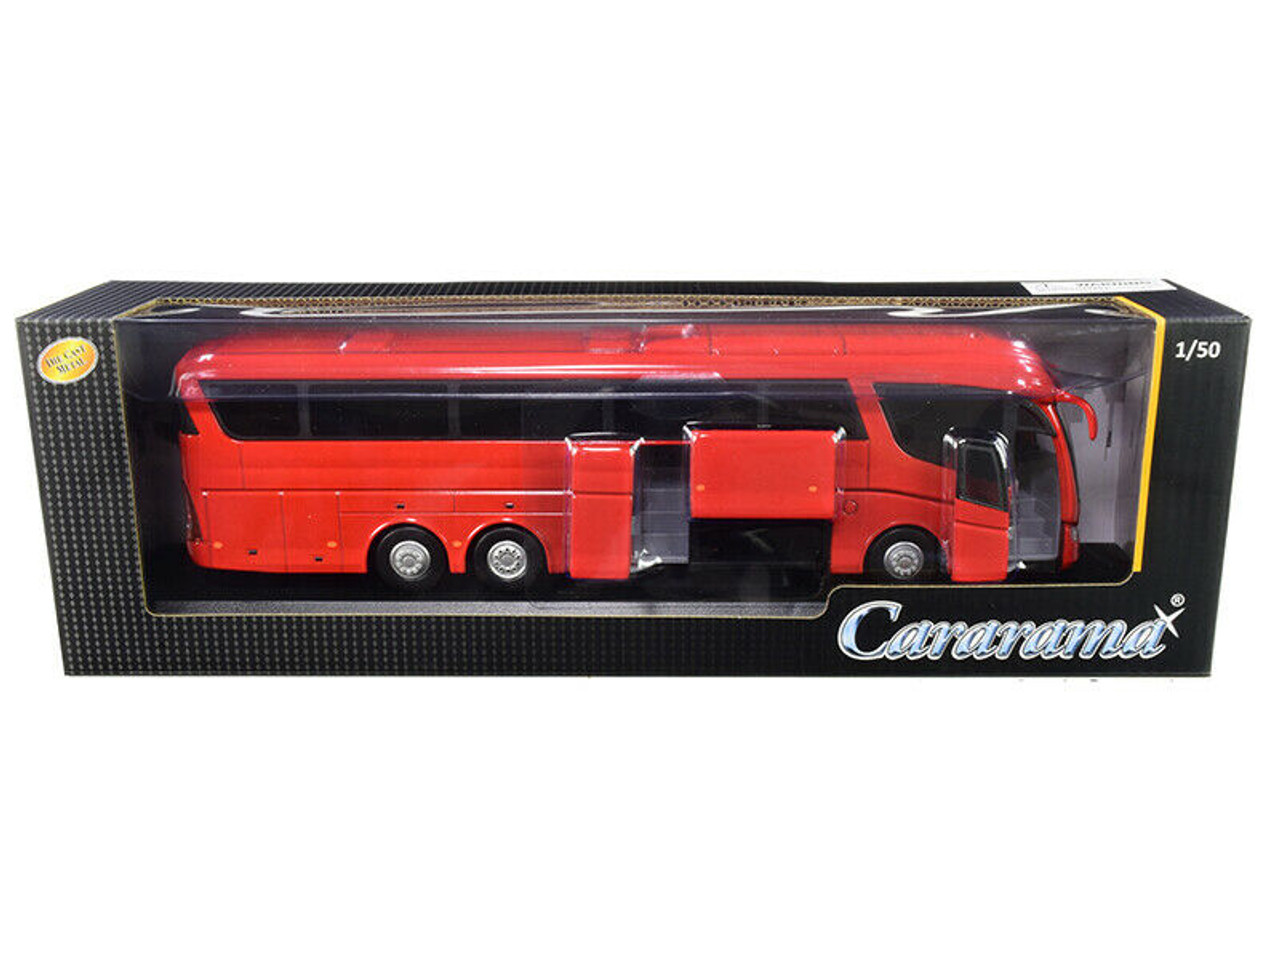 1/50 Cararama Scania Irizar Pb Coach Bus (Red) Diecast Car Model